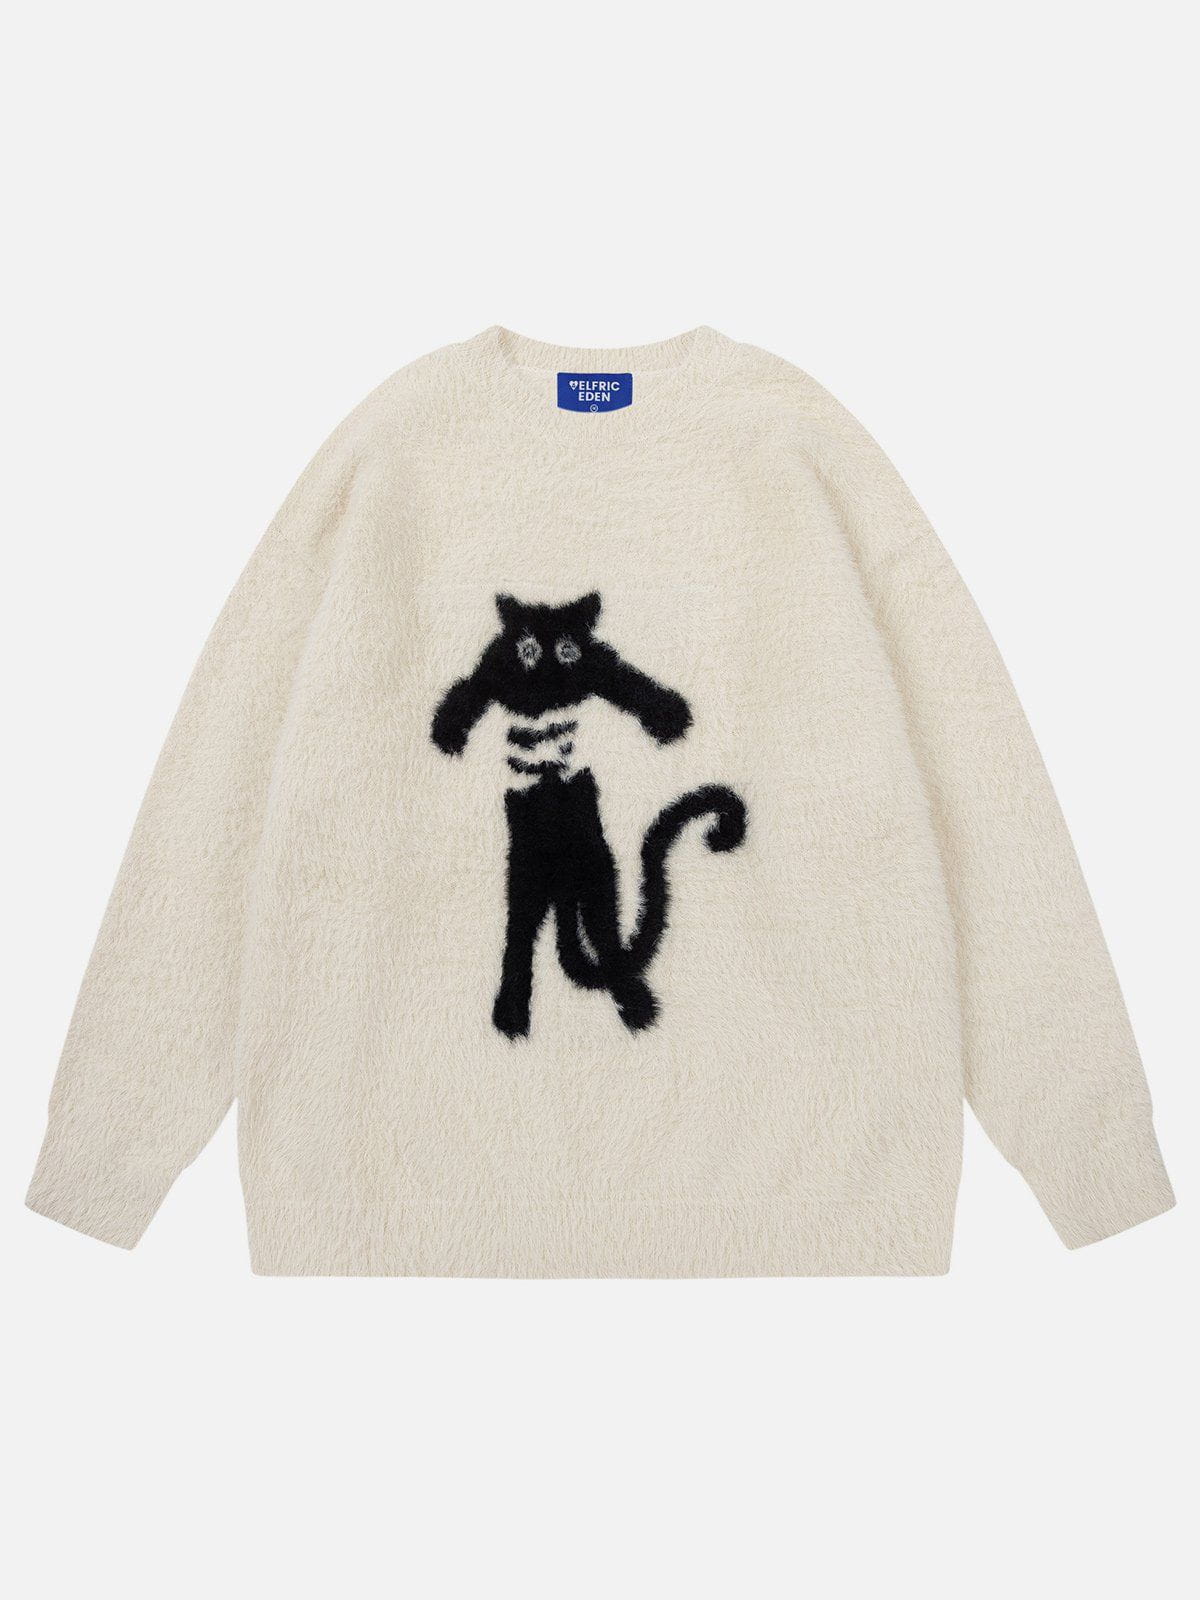 Aelfric Eden Cute Cat Sweater